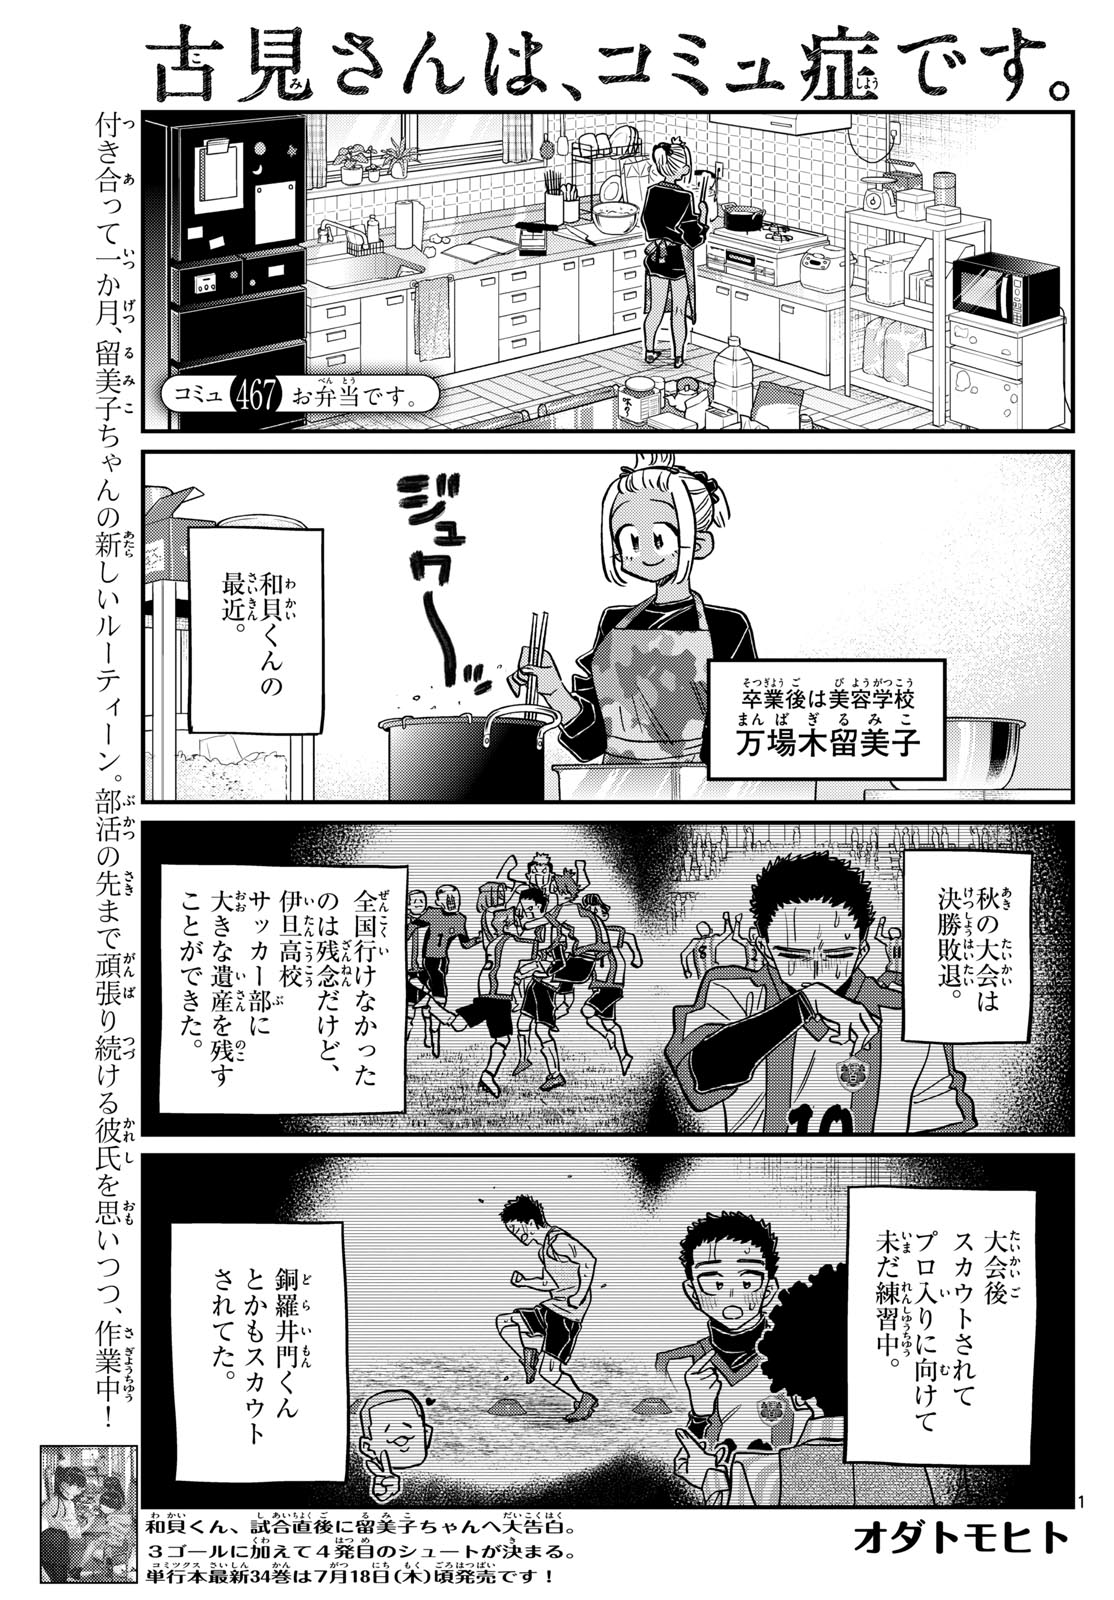 Komi-san wa Komyushou Desu - Chapter 467 - Page 1